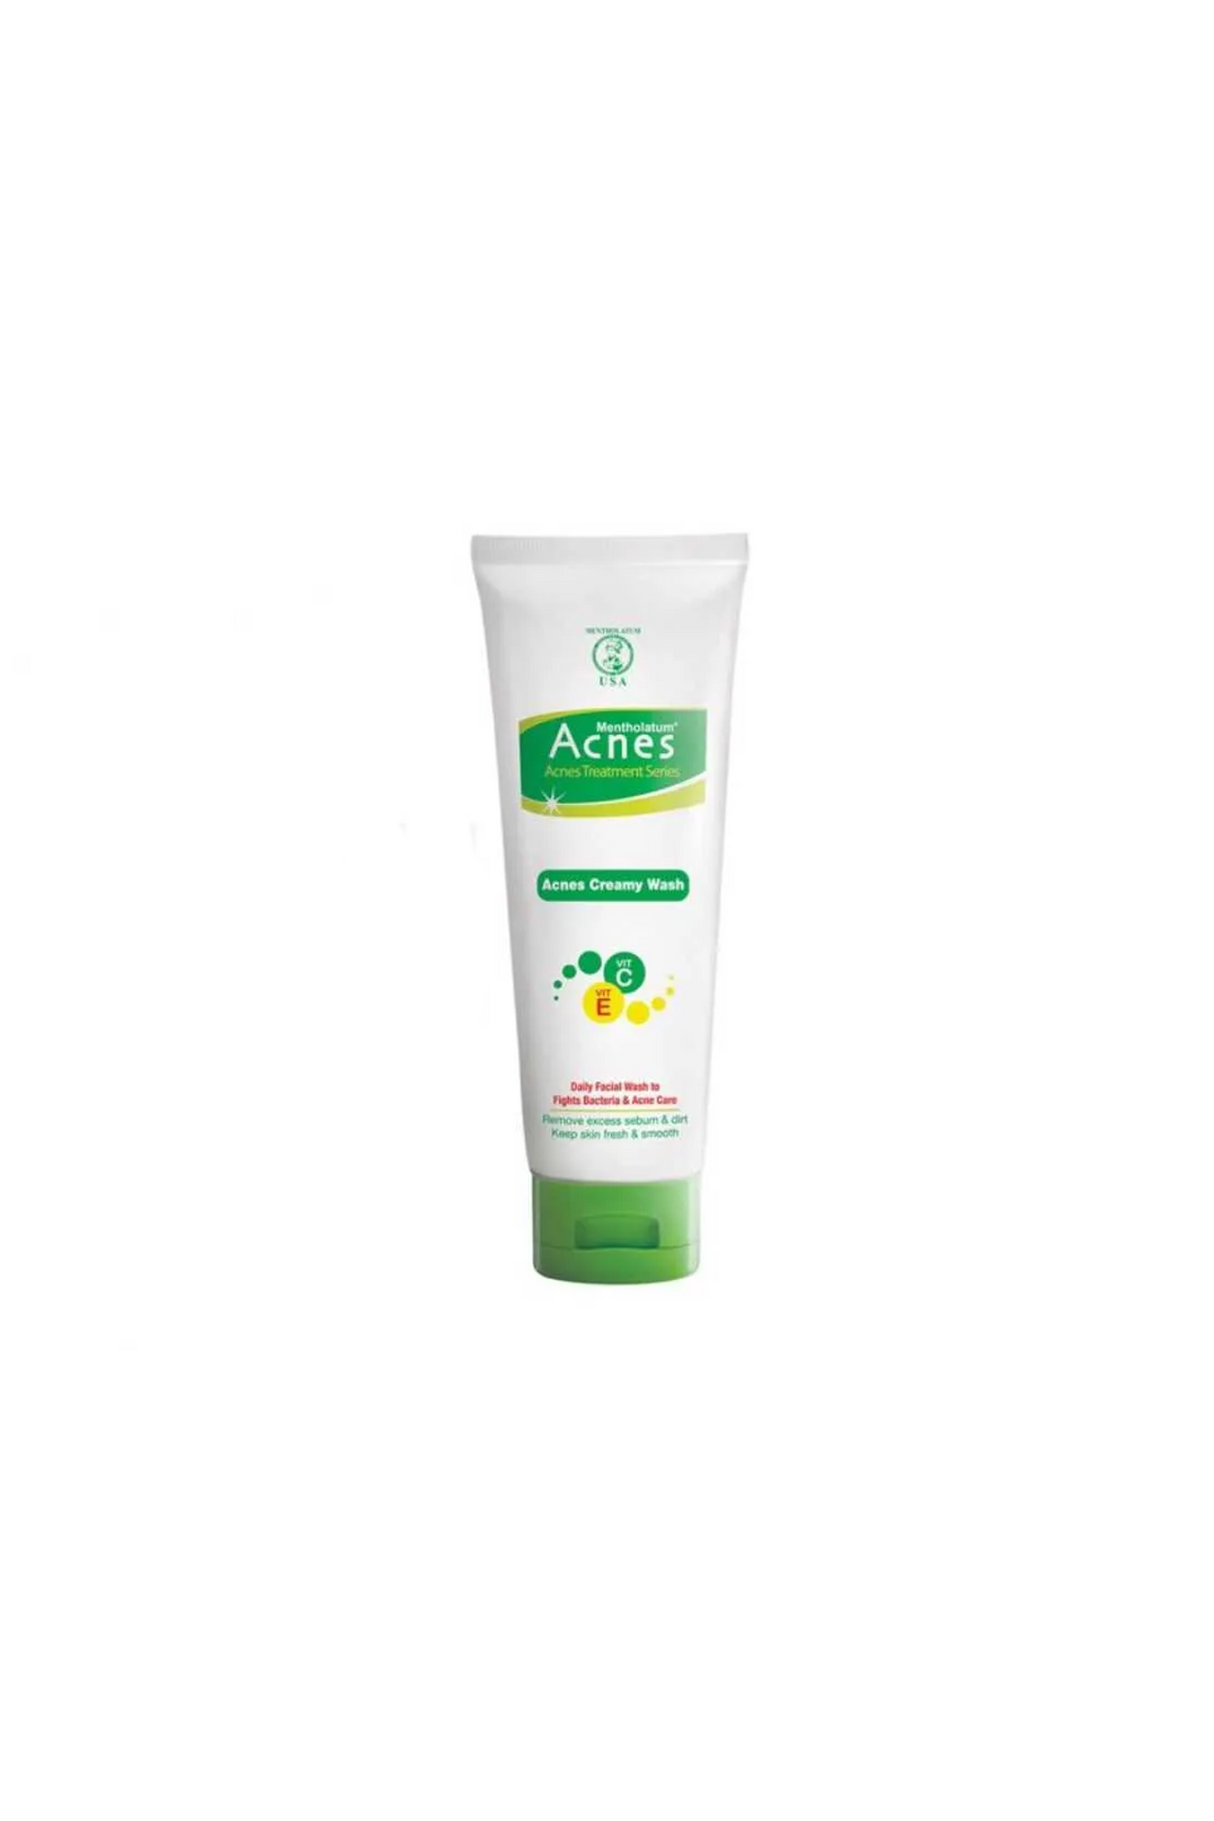 acnes face wash creamy 50g